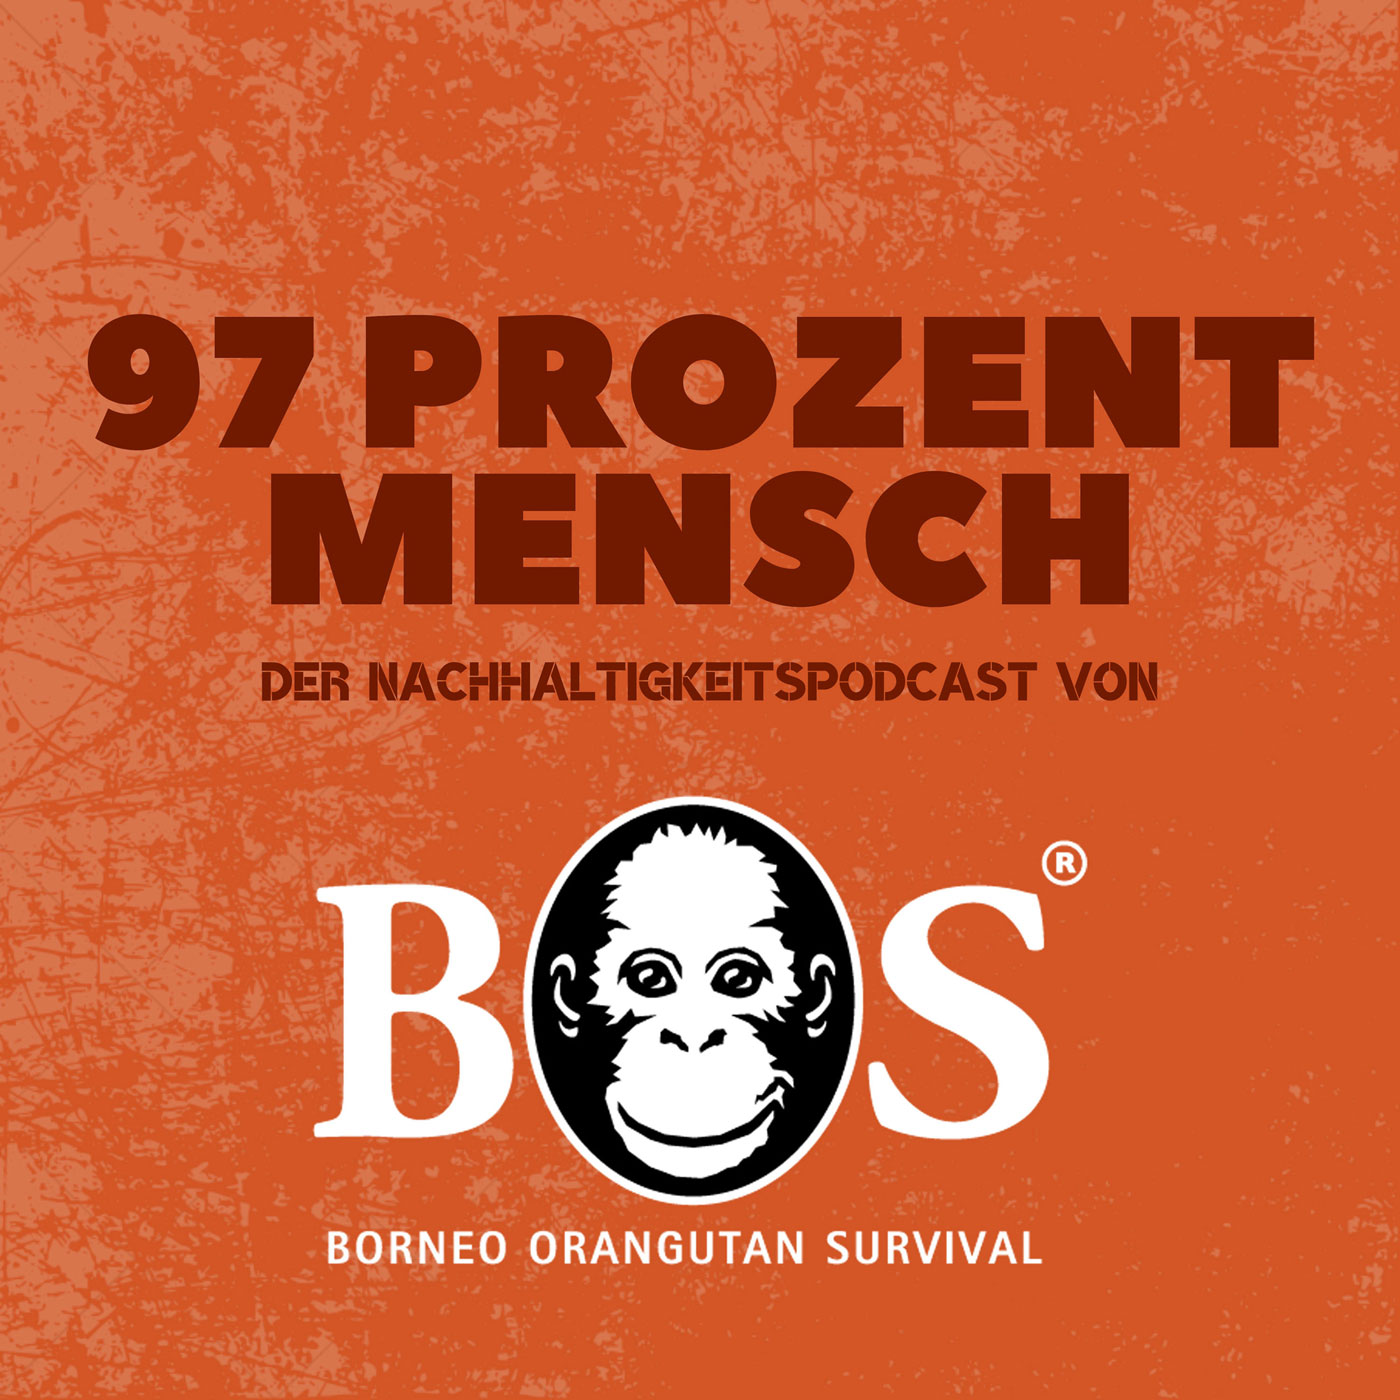 Podcast 97 Prozent Mensch - der Nachhaltigkeitspodcast von Borneo Orangutan Survival Deutschland